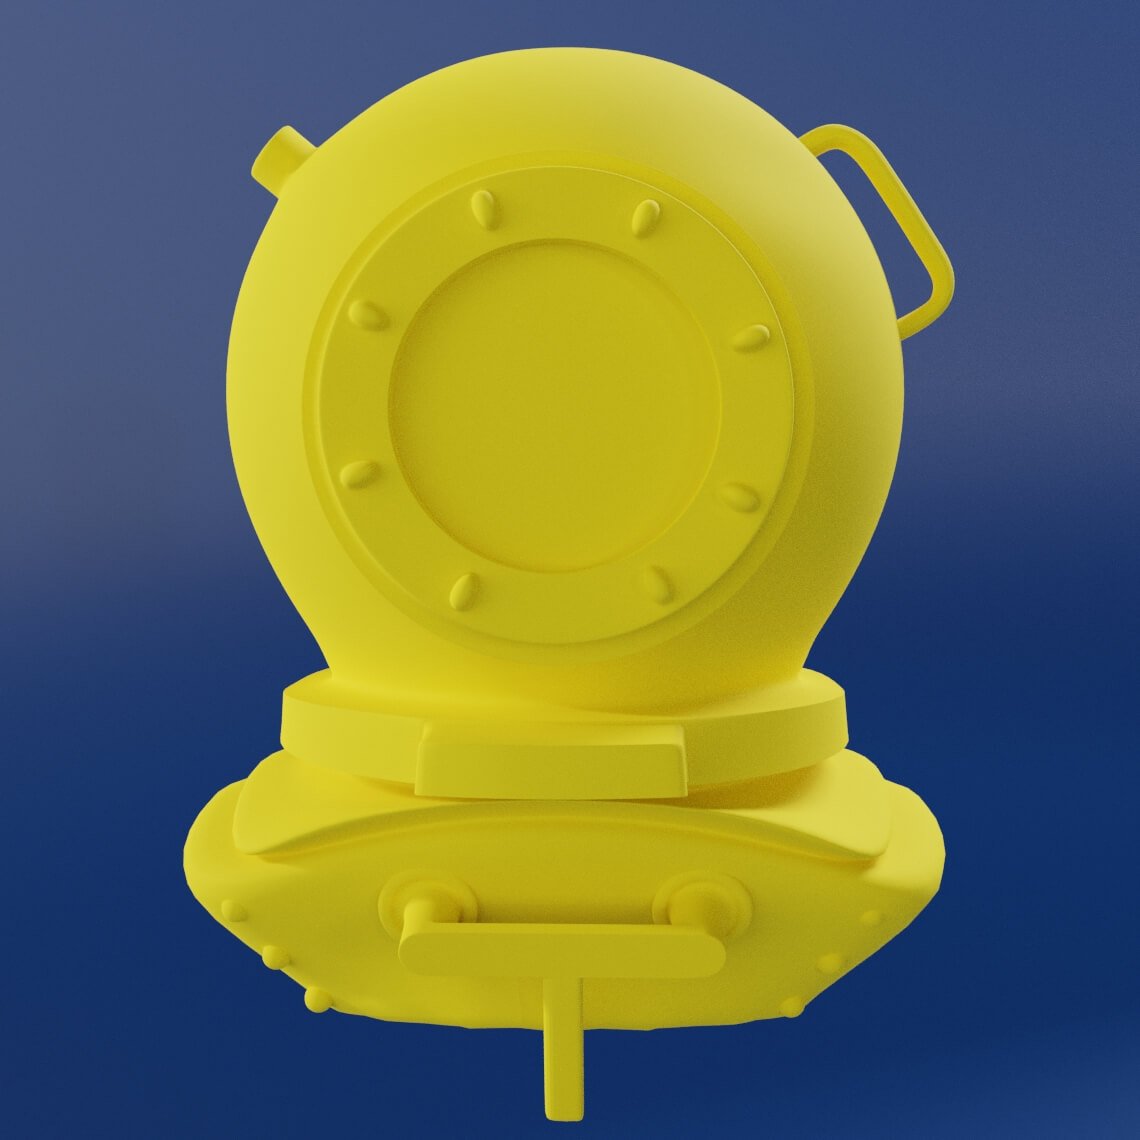 Capacete de mergulhador em 3D, com o acabamento de material amarelo que representa  a cor primária.